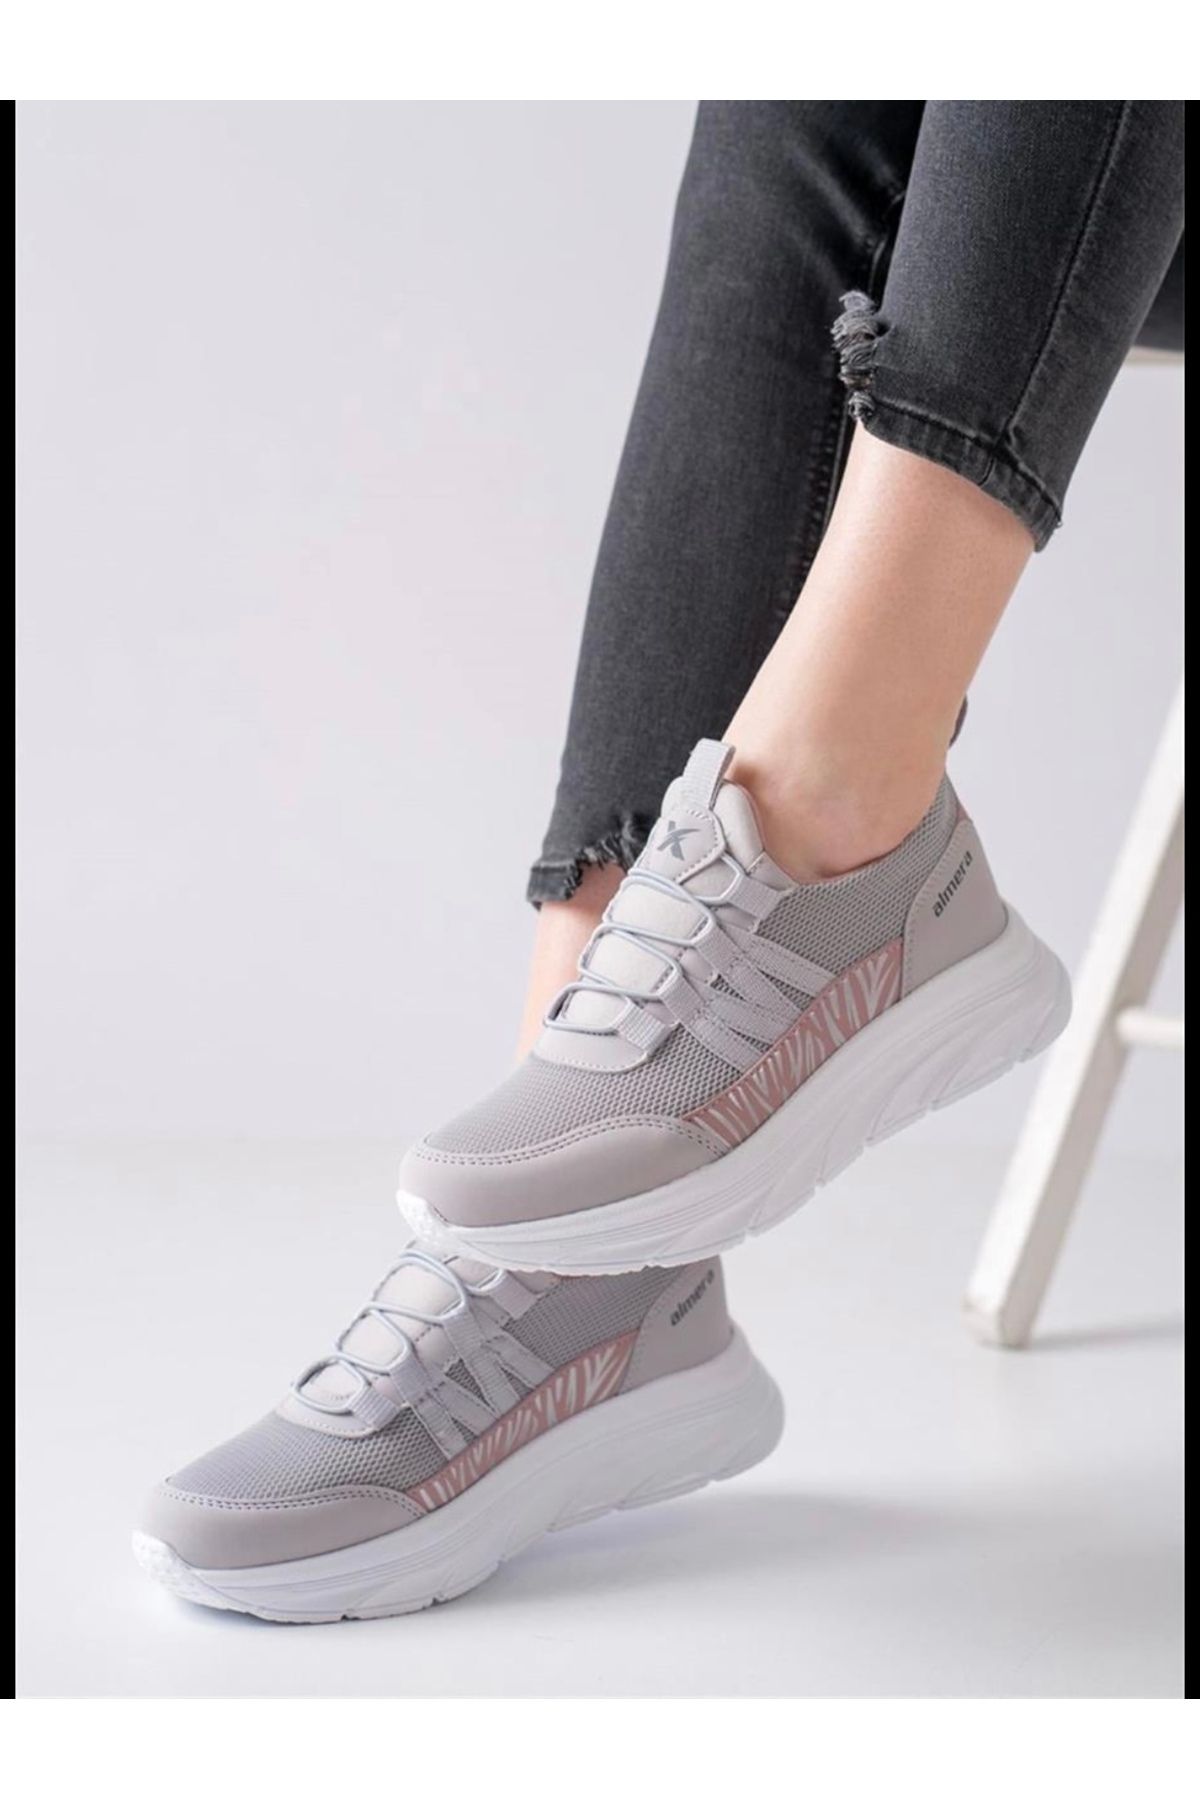 Almera Kadın Günlük Spor Ayakkabı Sneaker Yürüyüş Ayakkabısı Bağcıksız